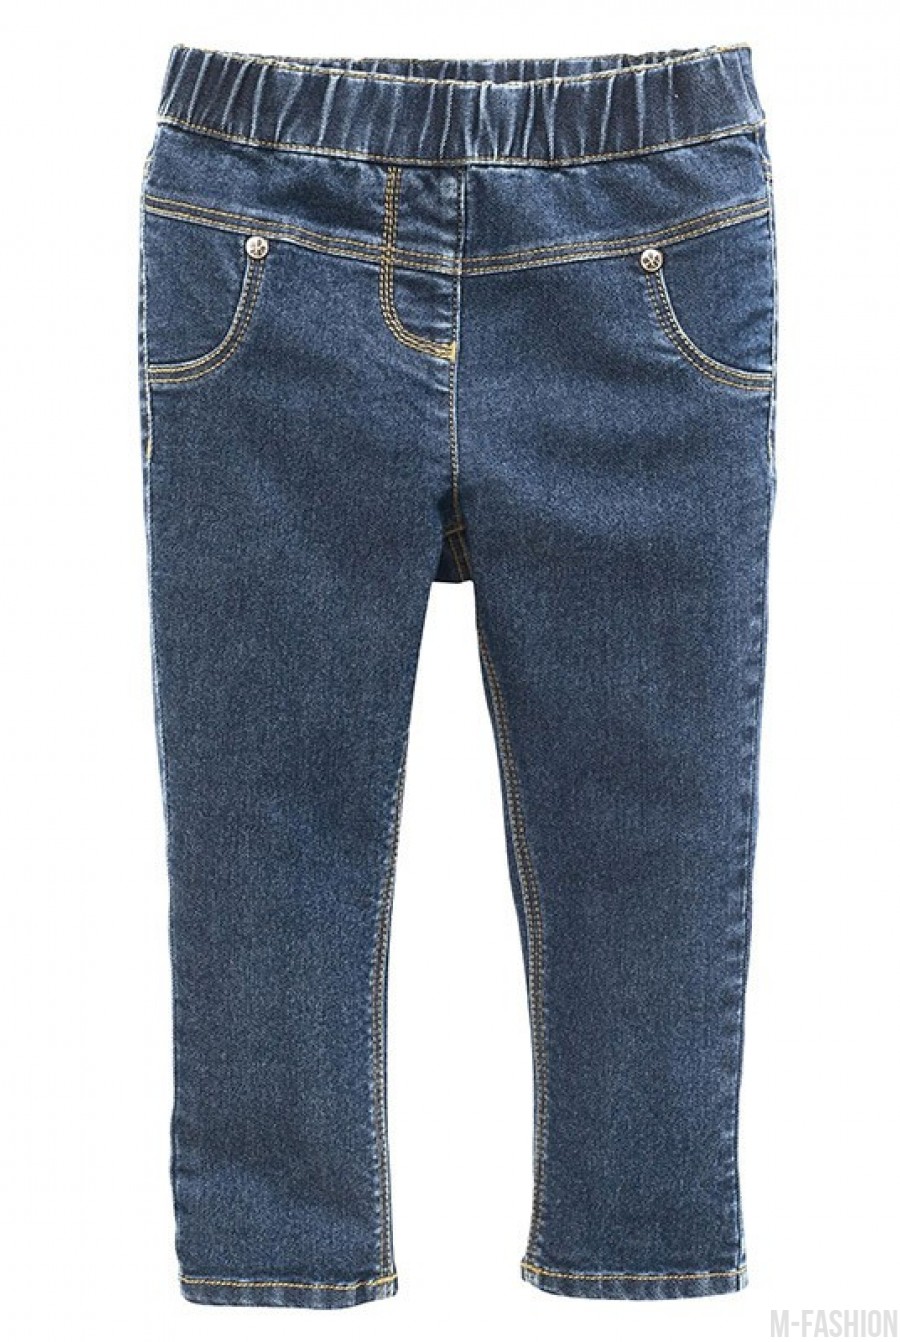 Прямые темно-синие джинсы на резинке - Фото 1